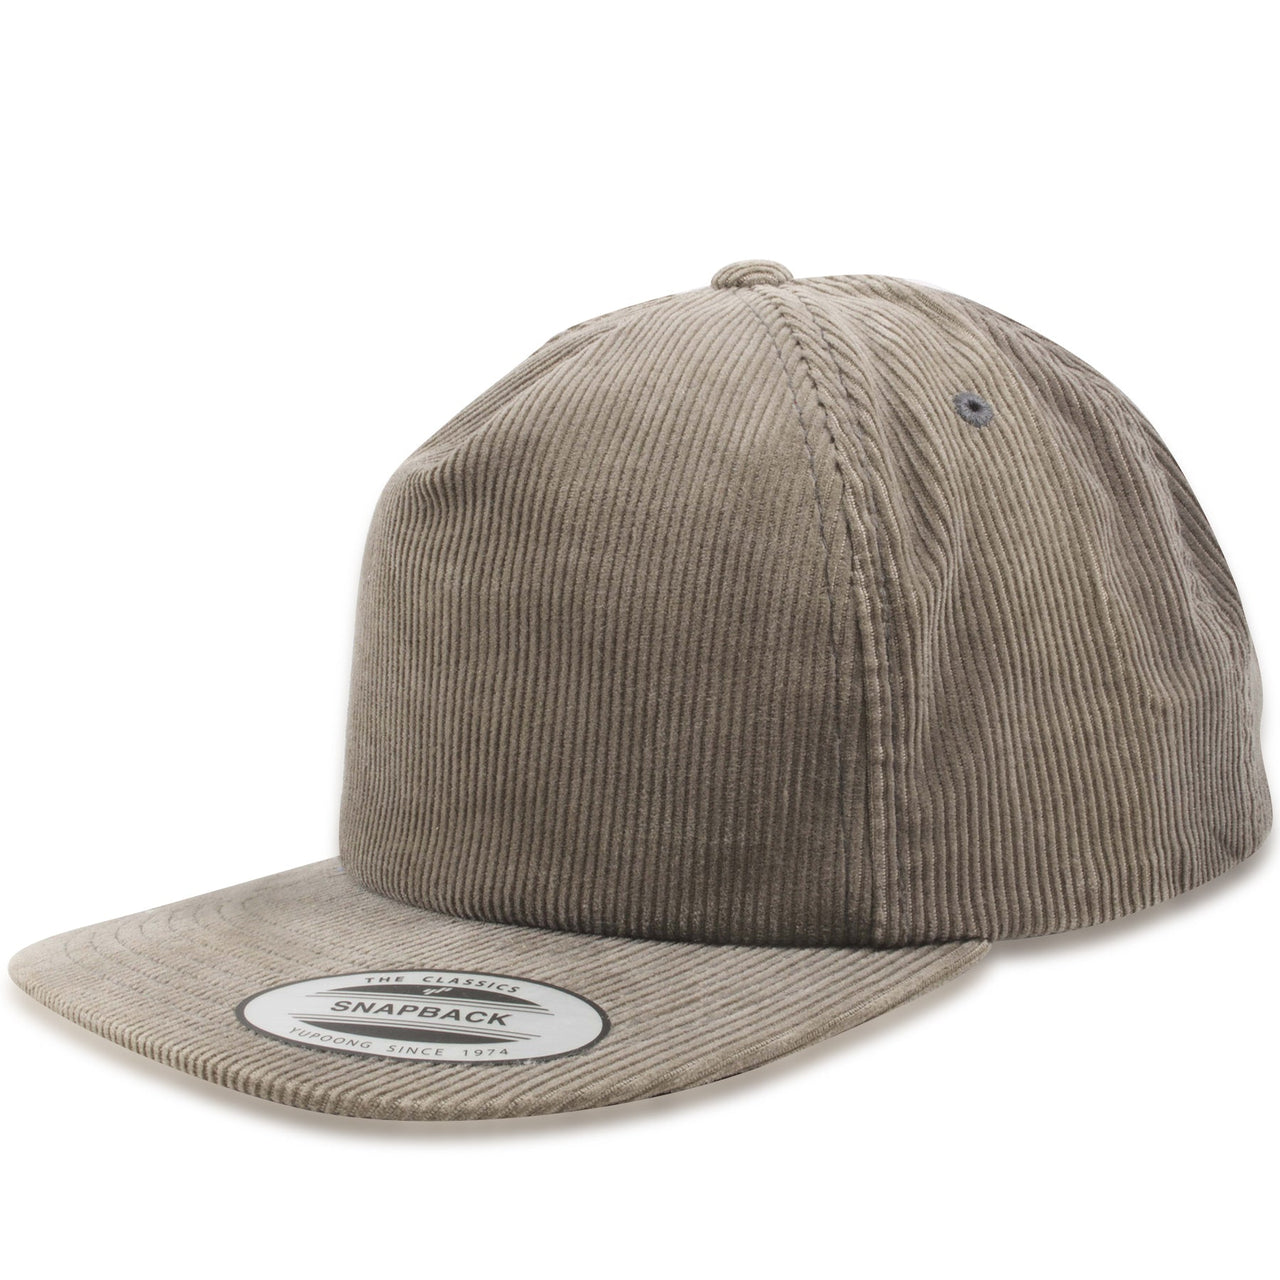 Blank Gray Corduroy Adjustable Snapback Hat